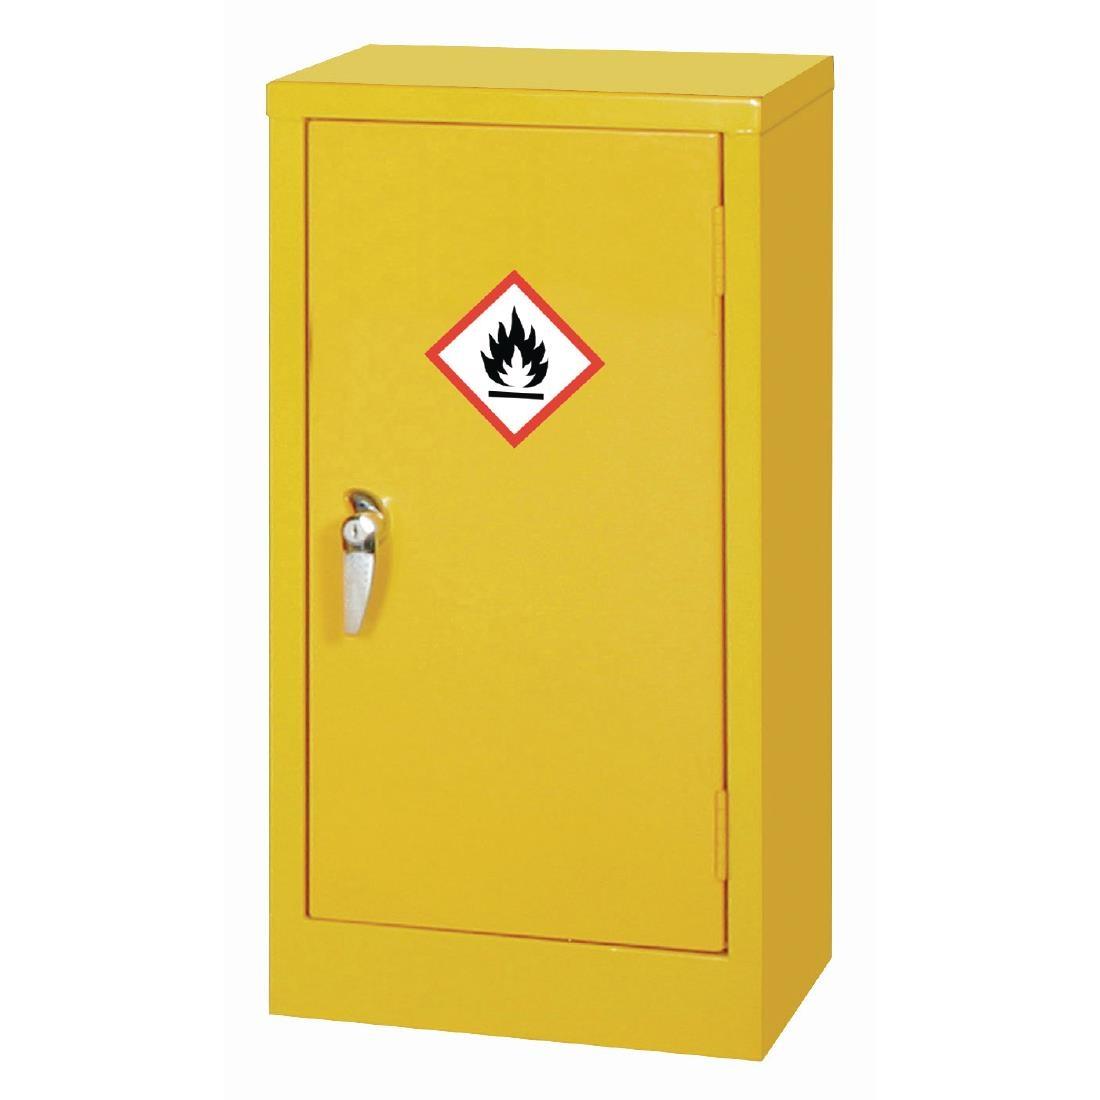 Hazardous Substance Cabinet Single Door Yellow 10Ltr - CD998  - 1